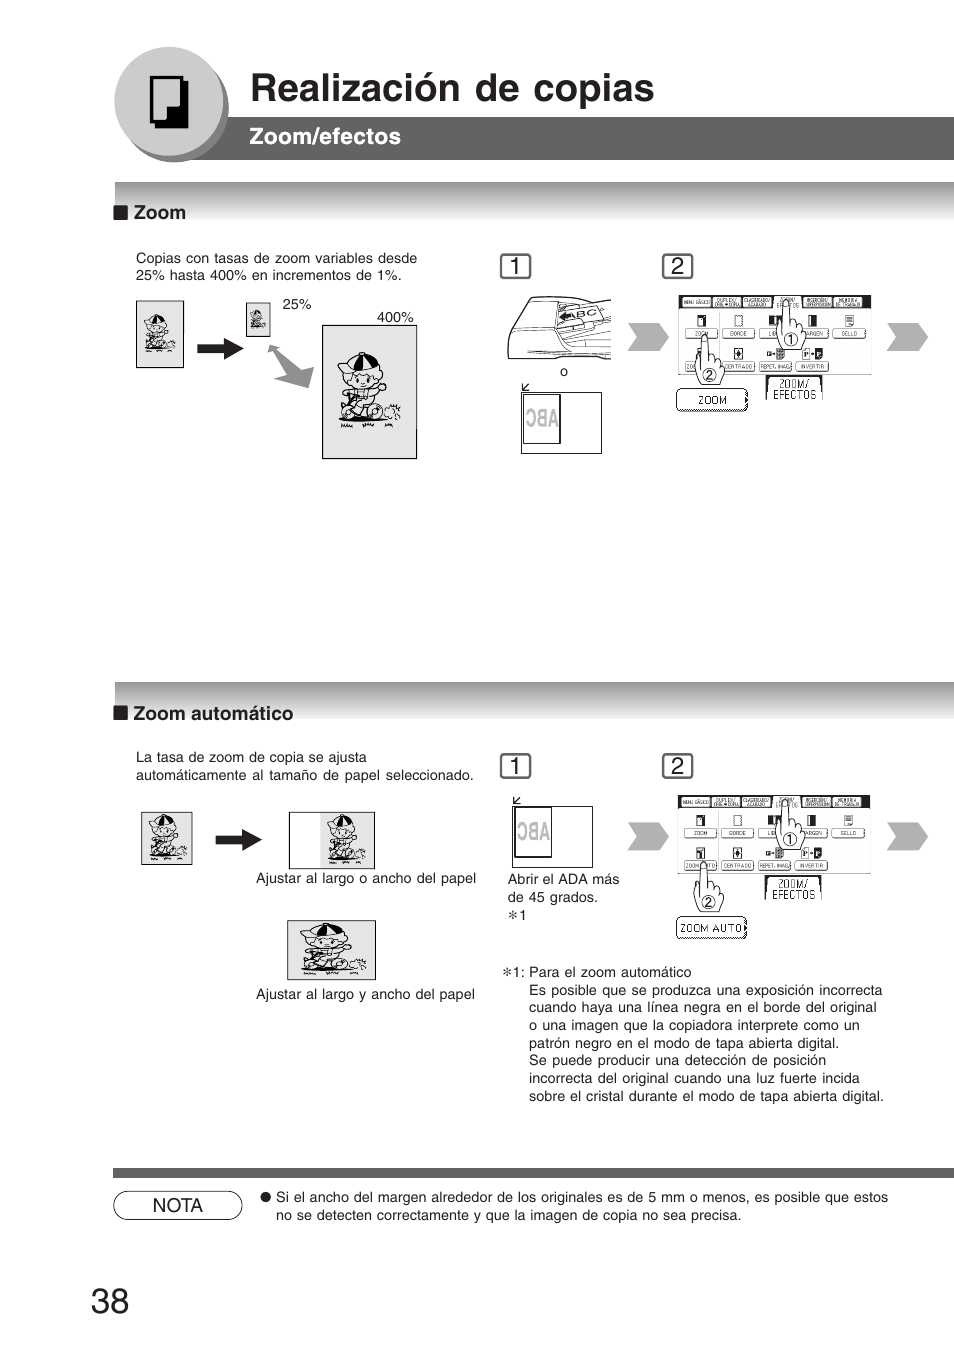 Zoom/efectos, Zoom, Zoom automático | Zoom ■ zoom automático, Realización de copias | Panasonic DP8035 Manual del usuario | Página 38 / 92